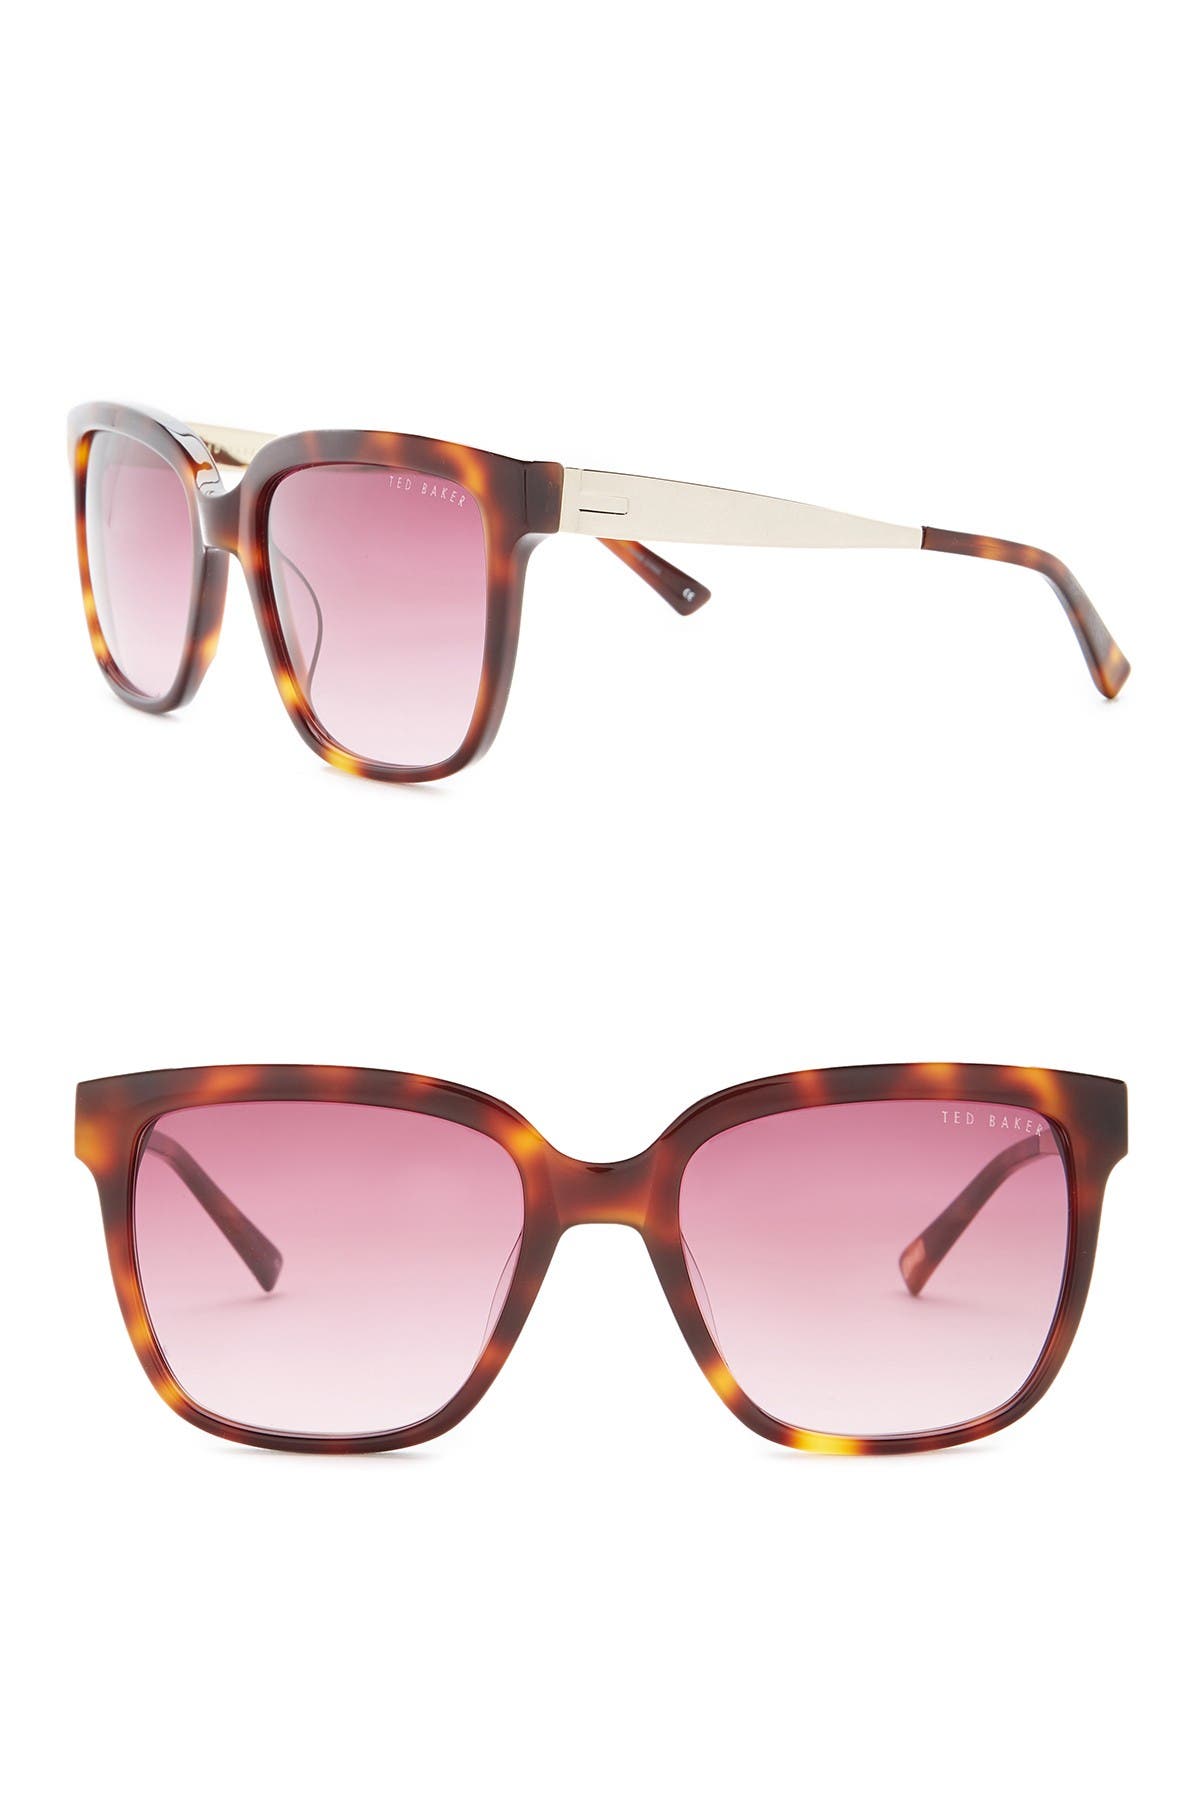 Ted Baker London | 55mm Acetate Frame Oversized Sunglasses | Nordstrom Rack